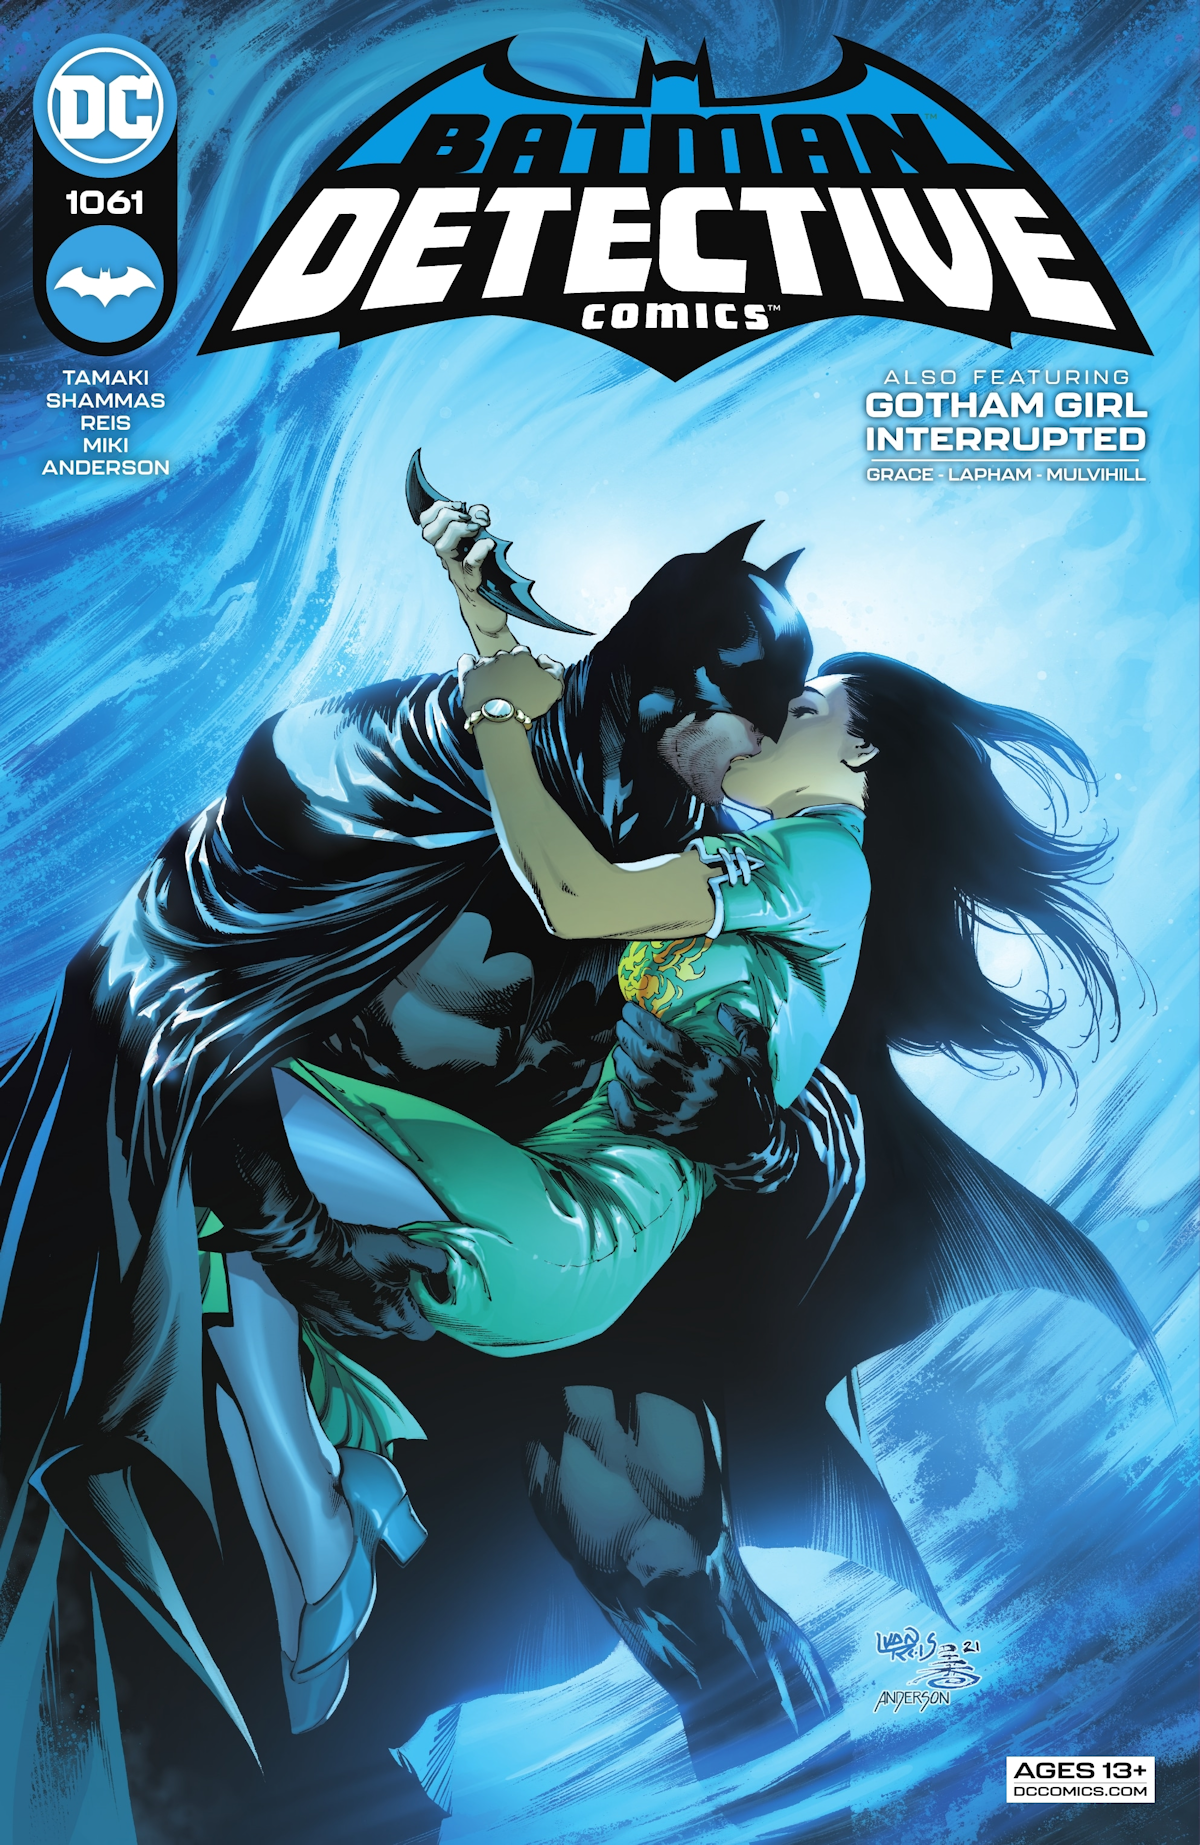 Detective Comics 1061 (Cover A)